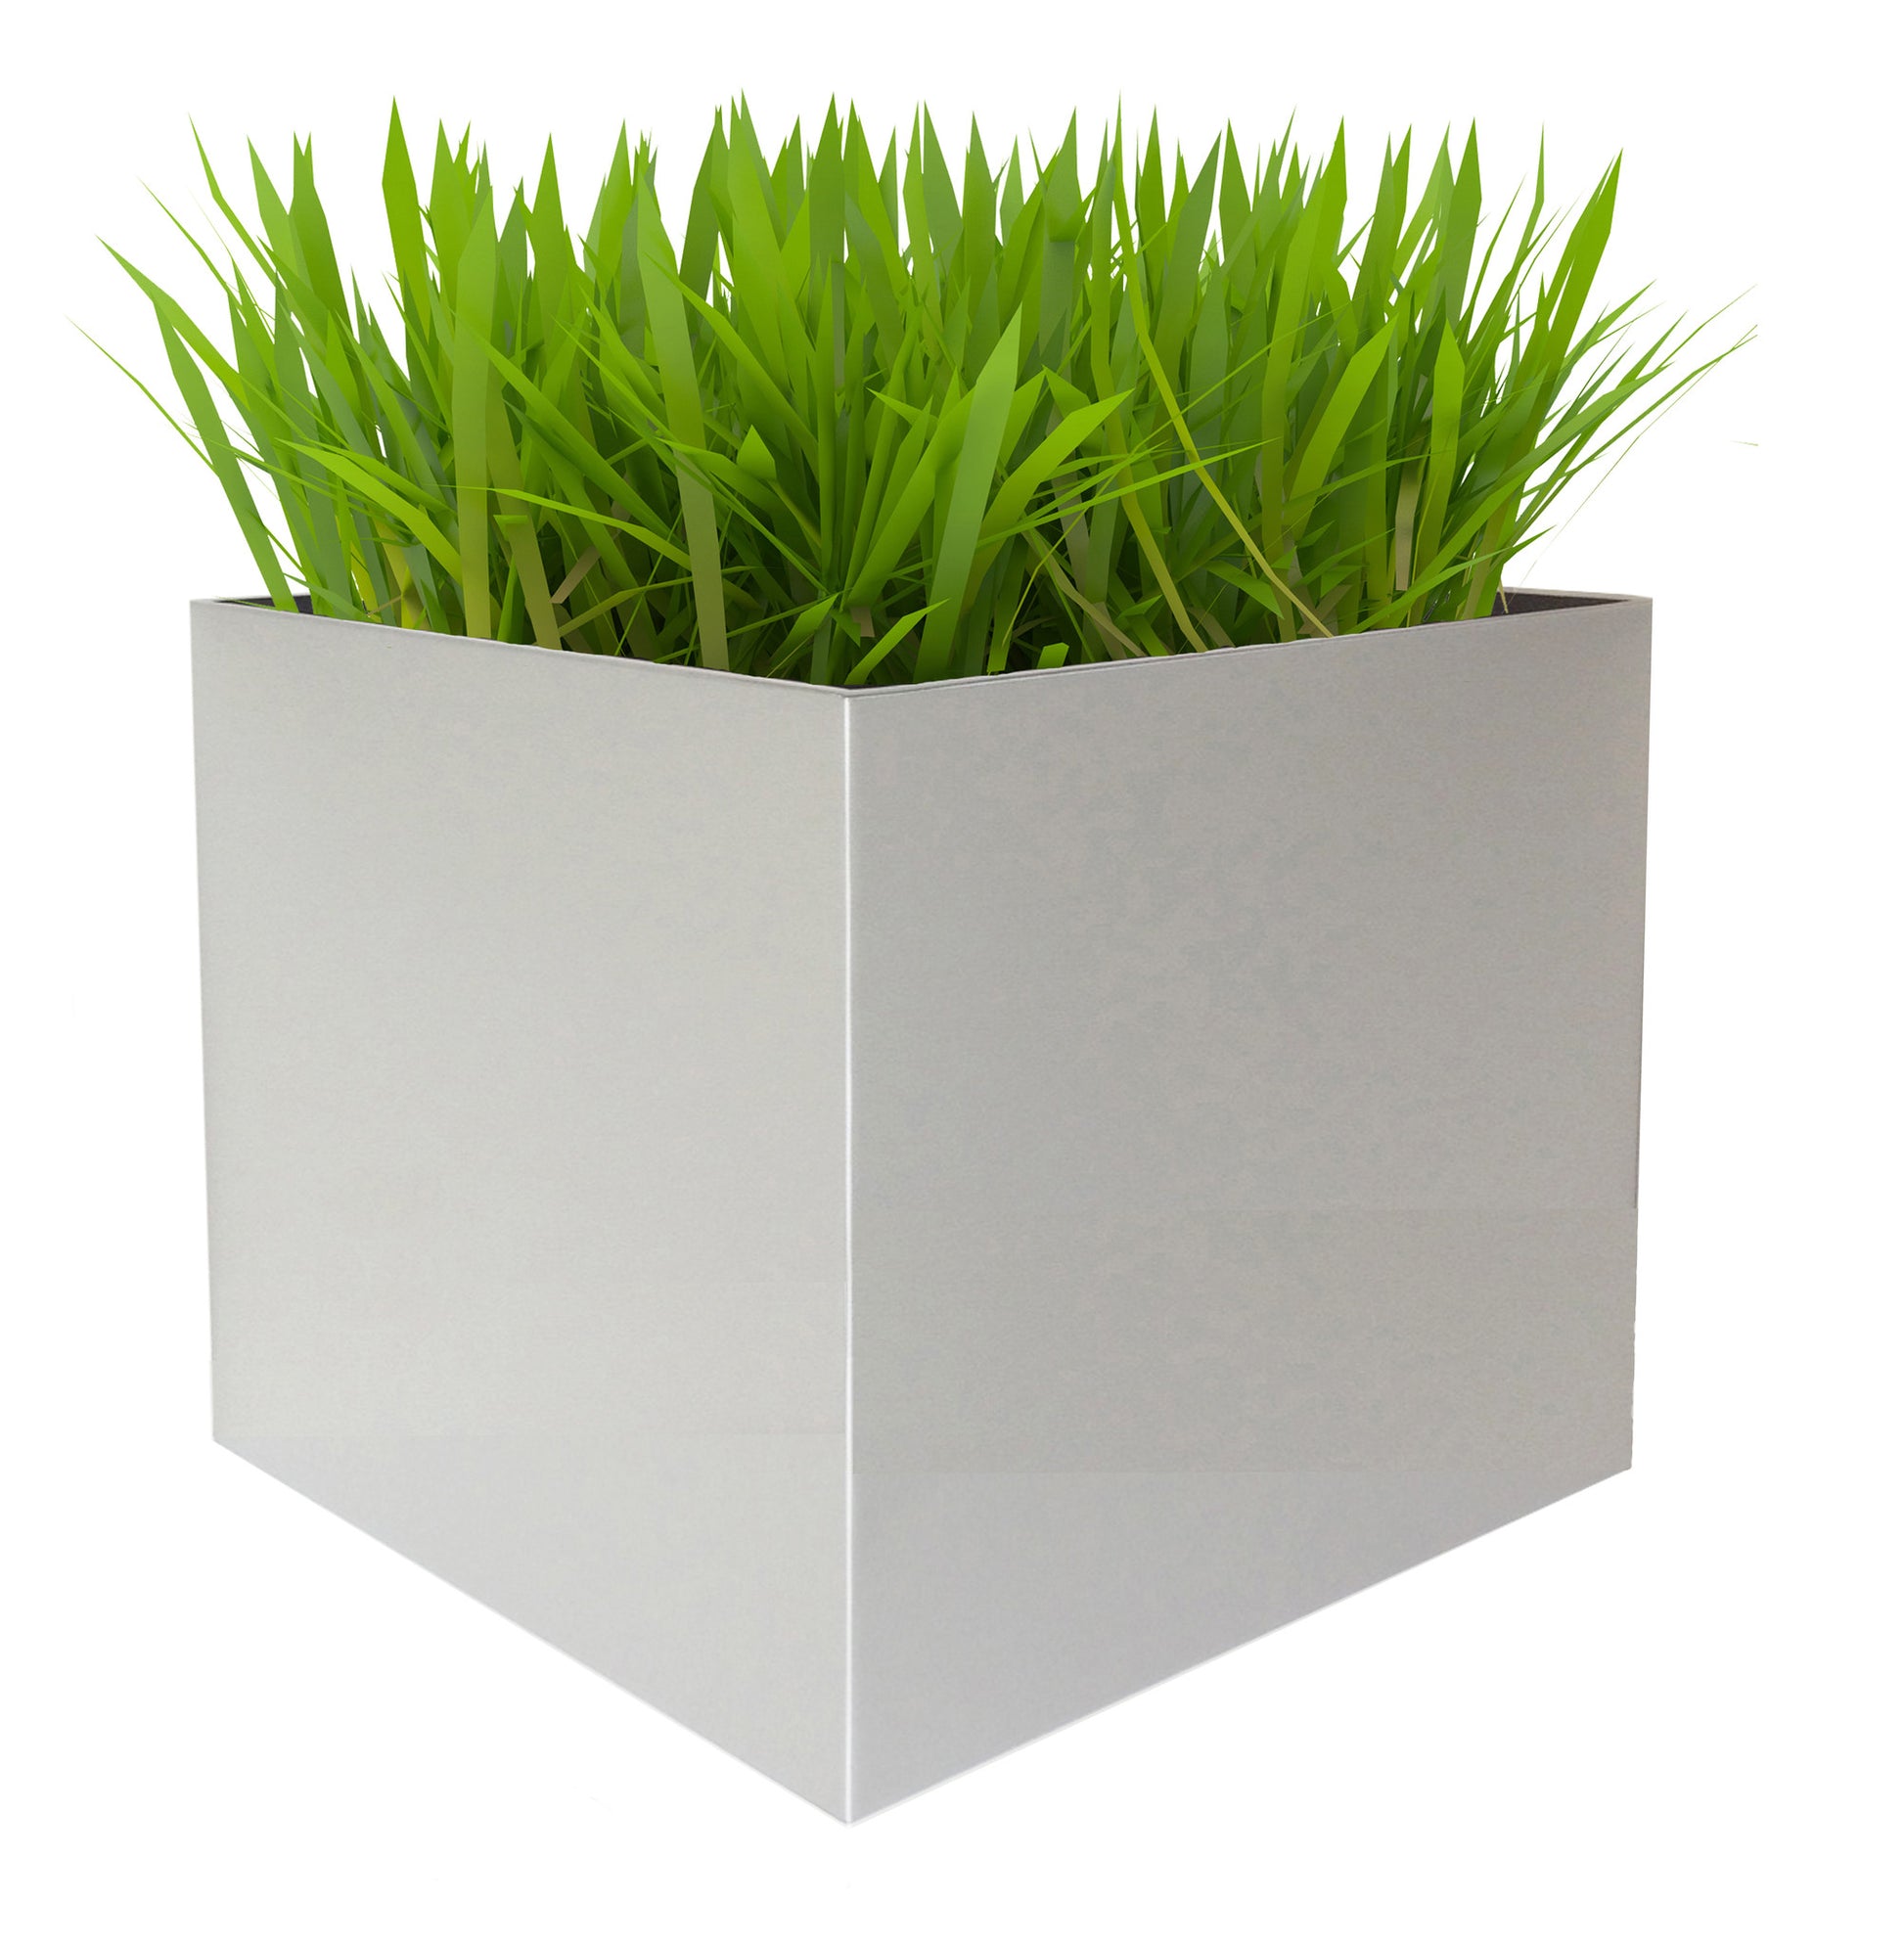 NMN Designs Madeira Aluminum Contemporary Cube Planter - Extra Large - gardenmybalcony.com - 2